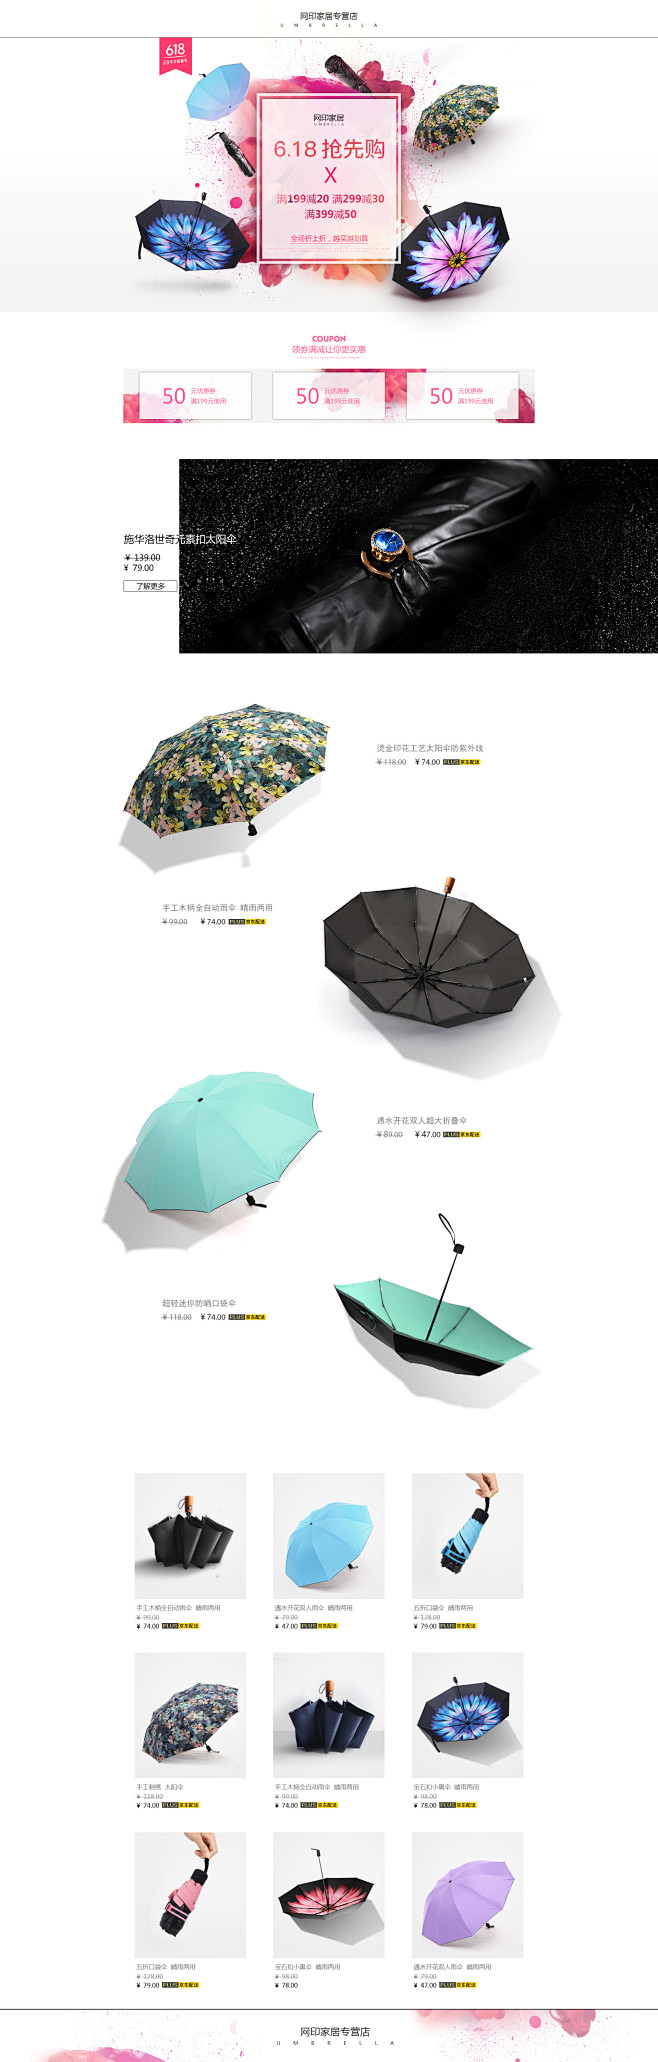 雨伞首页承接页设计